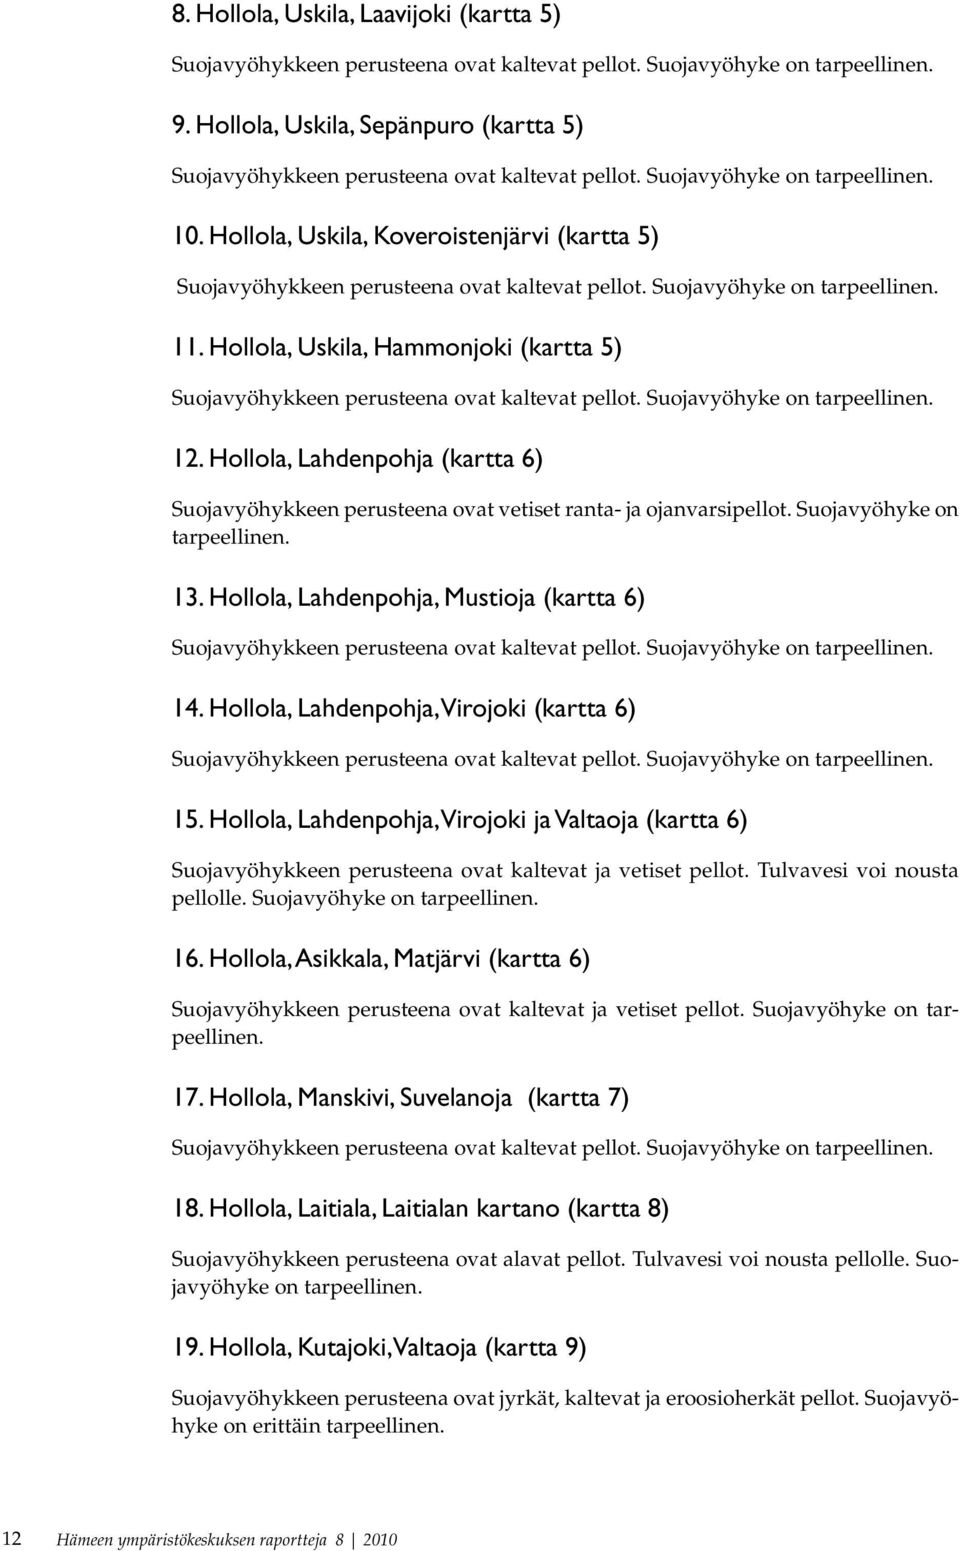 Hollola, Lahdenpohja, Virojoki (kartta 6) 15. Hollola, Lahdenpohja, Virojoki ja Valtaoja (kartta 6) Suojavyöhykkeen perusteena ovat kaltevat ja vetiset pellot. Tulvavesi voi nousta pellolle.